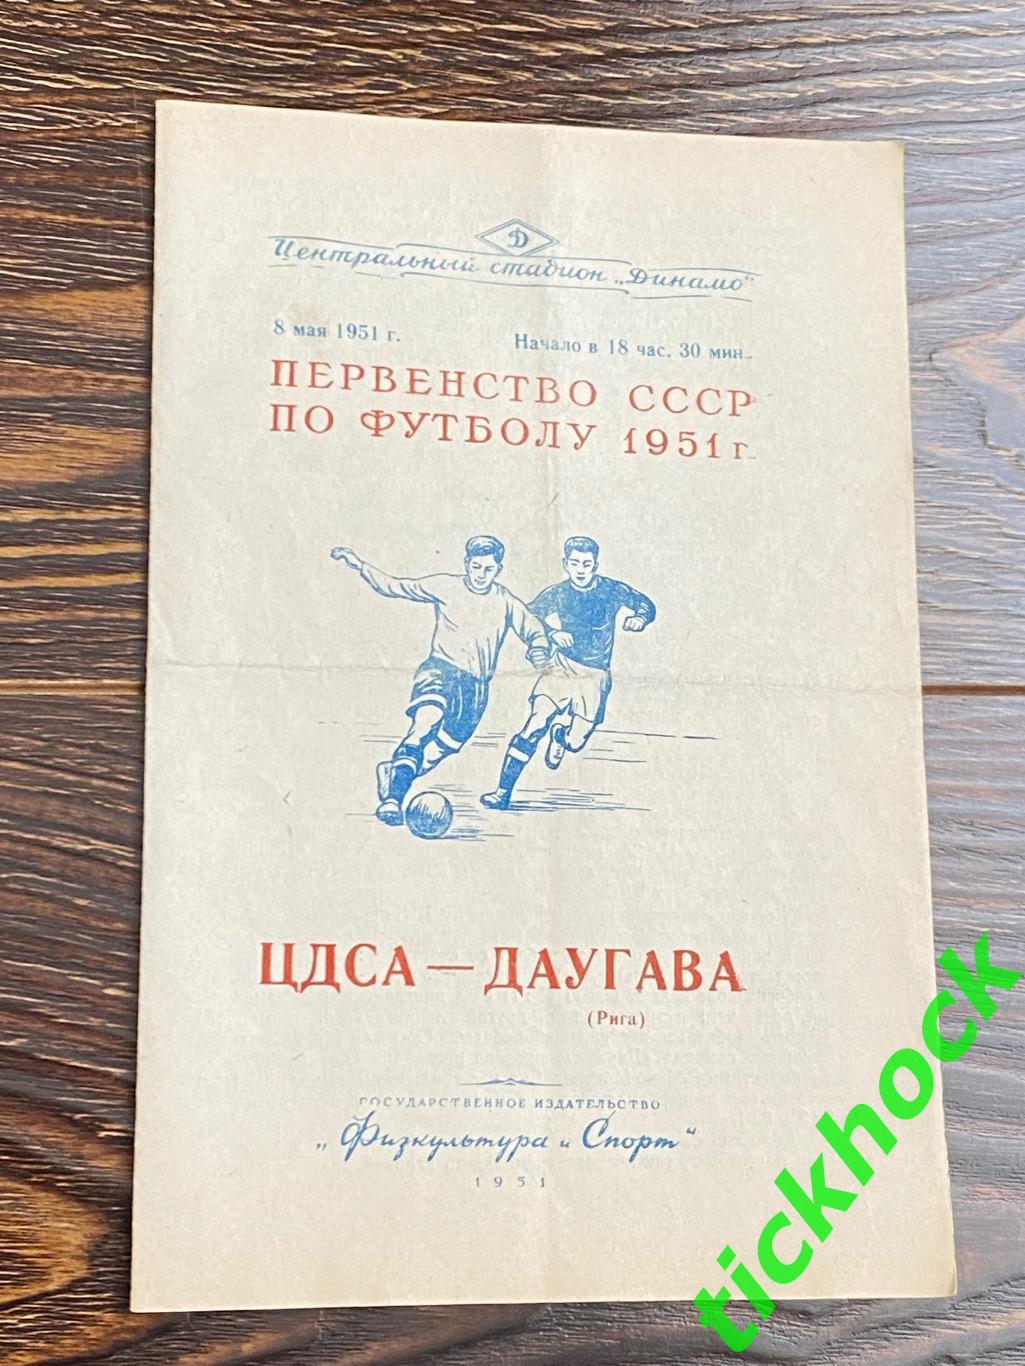 ЦДСА / ЦСКА Москва - Даугава Рига 08.05. 1951-- SY